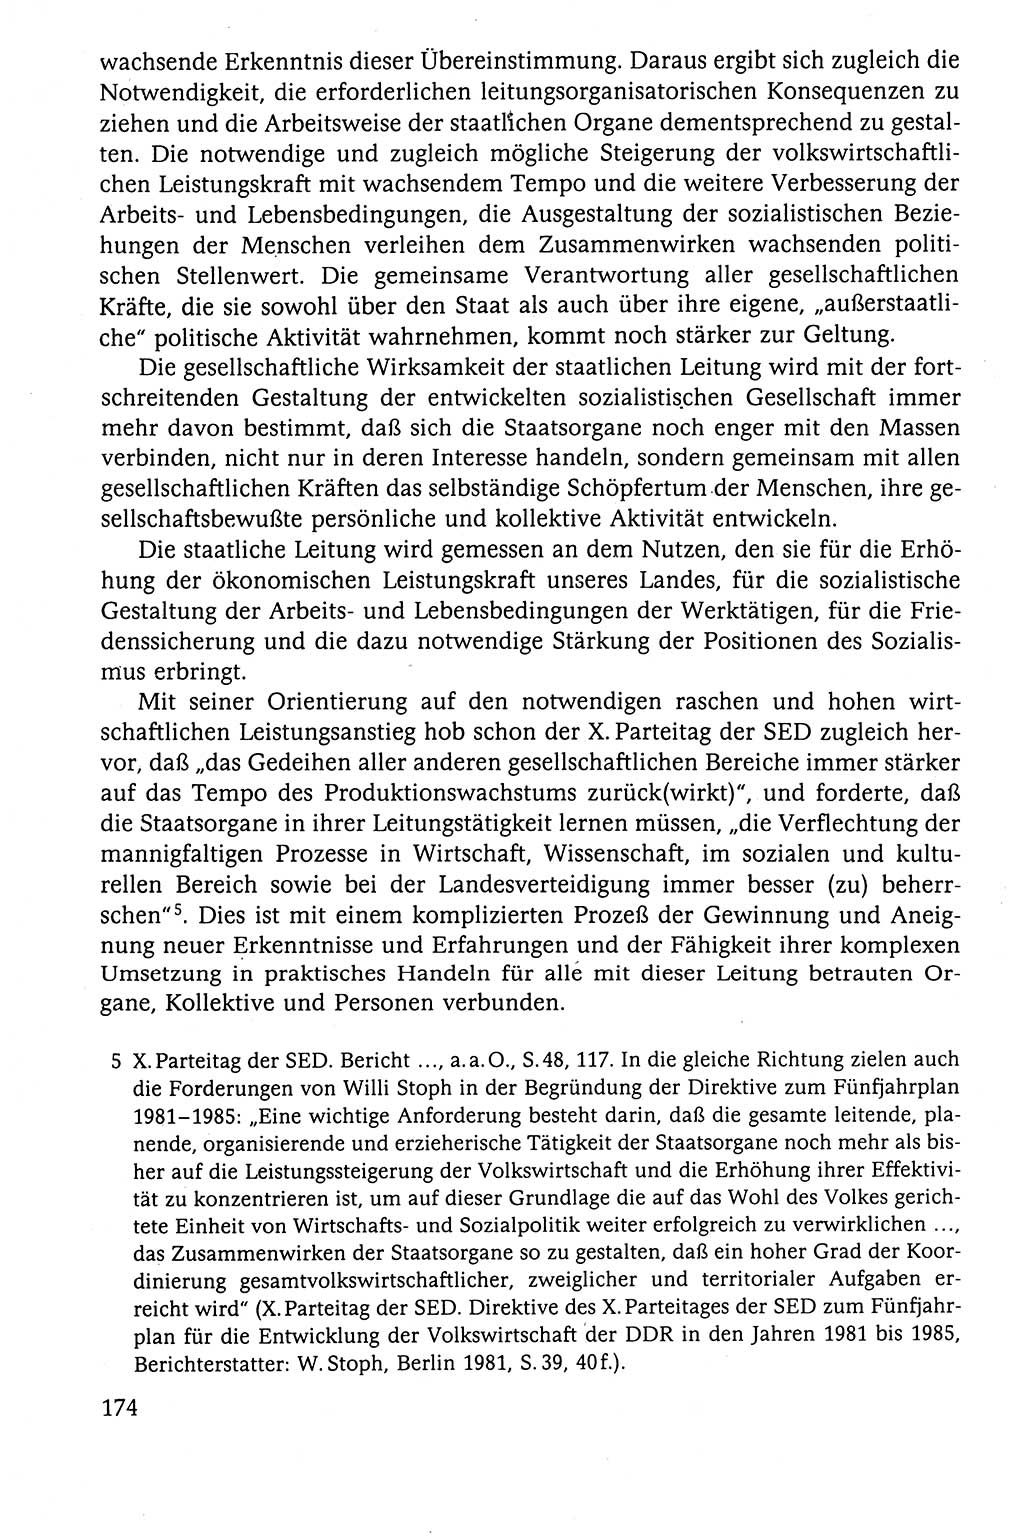 Der Staat im politischen System der DDR (Deutsche Demokratische Republik) 1986, Seite 174 (St. pol. Sys. DDR 1986, S. 174)